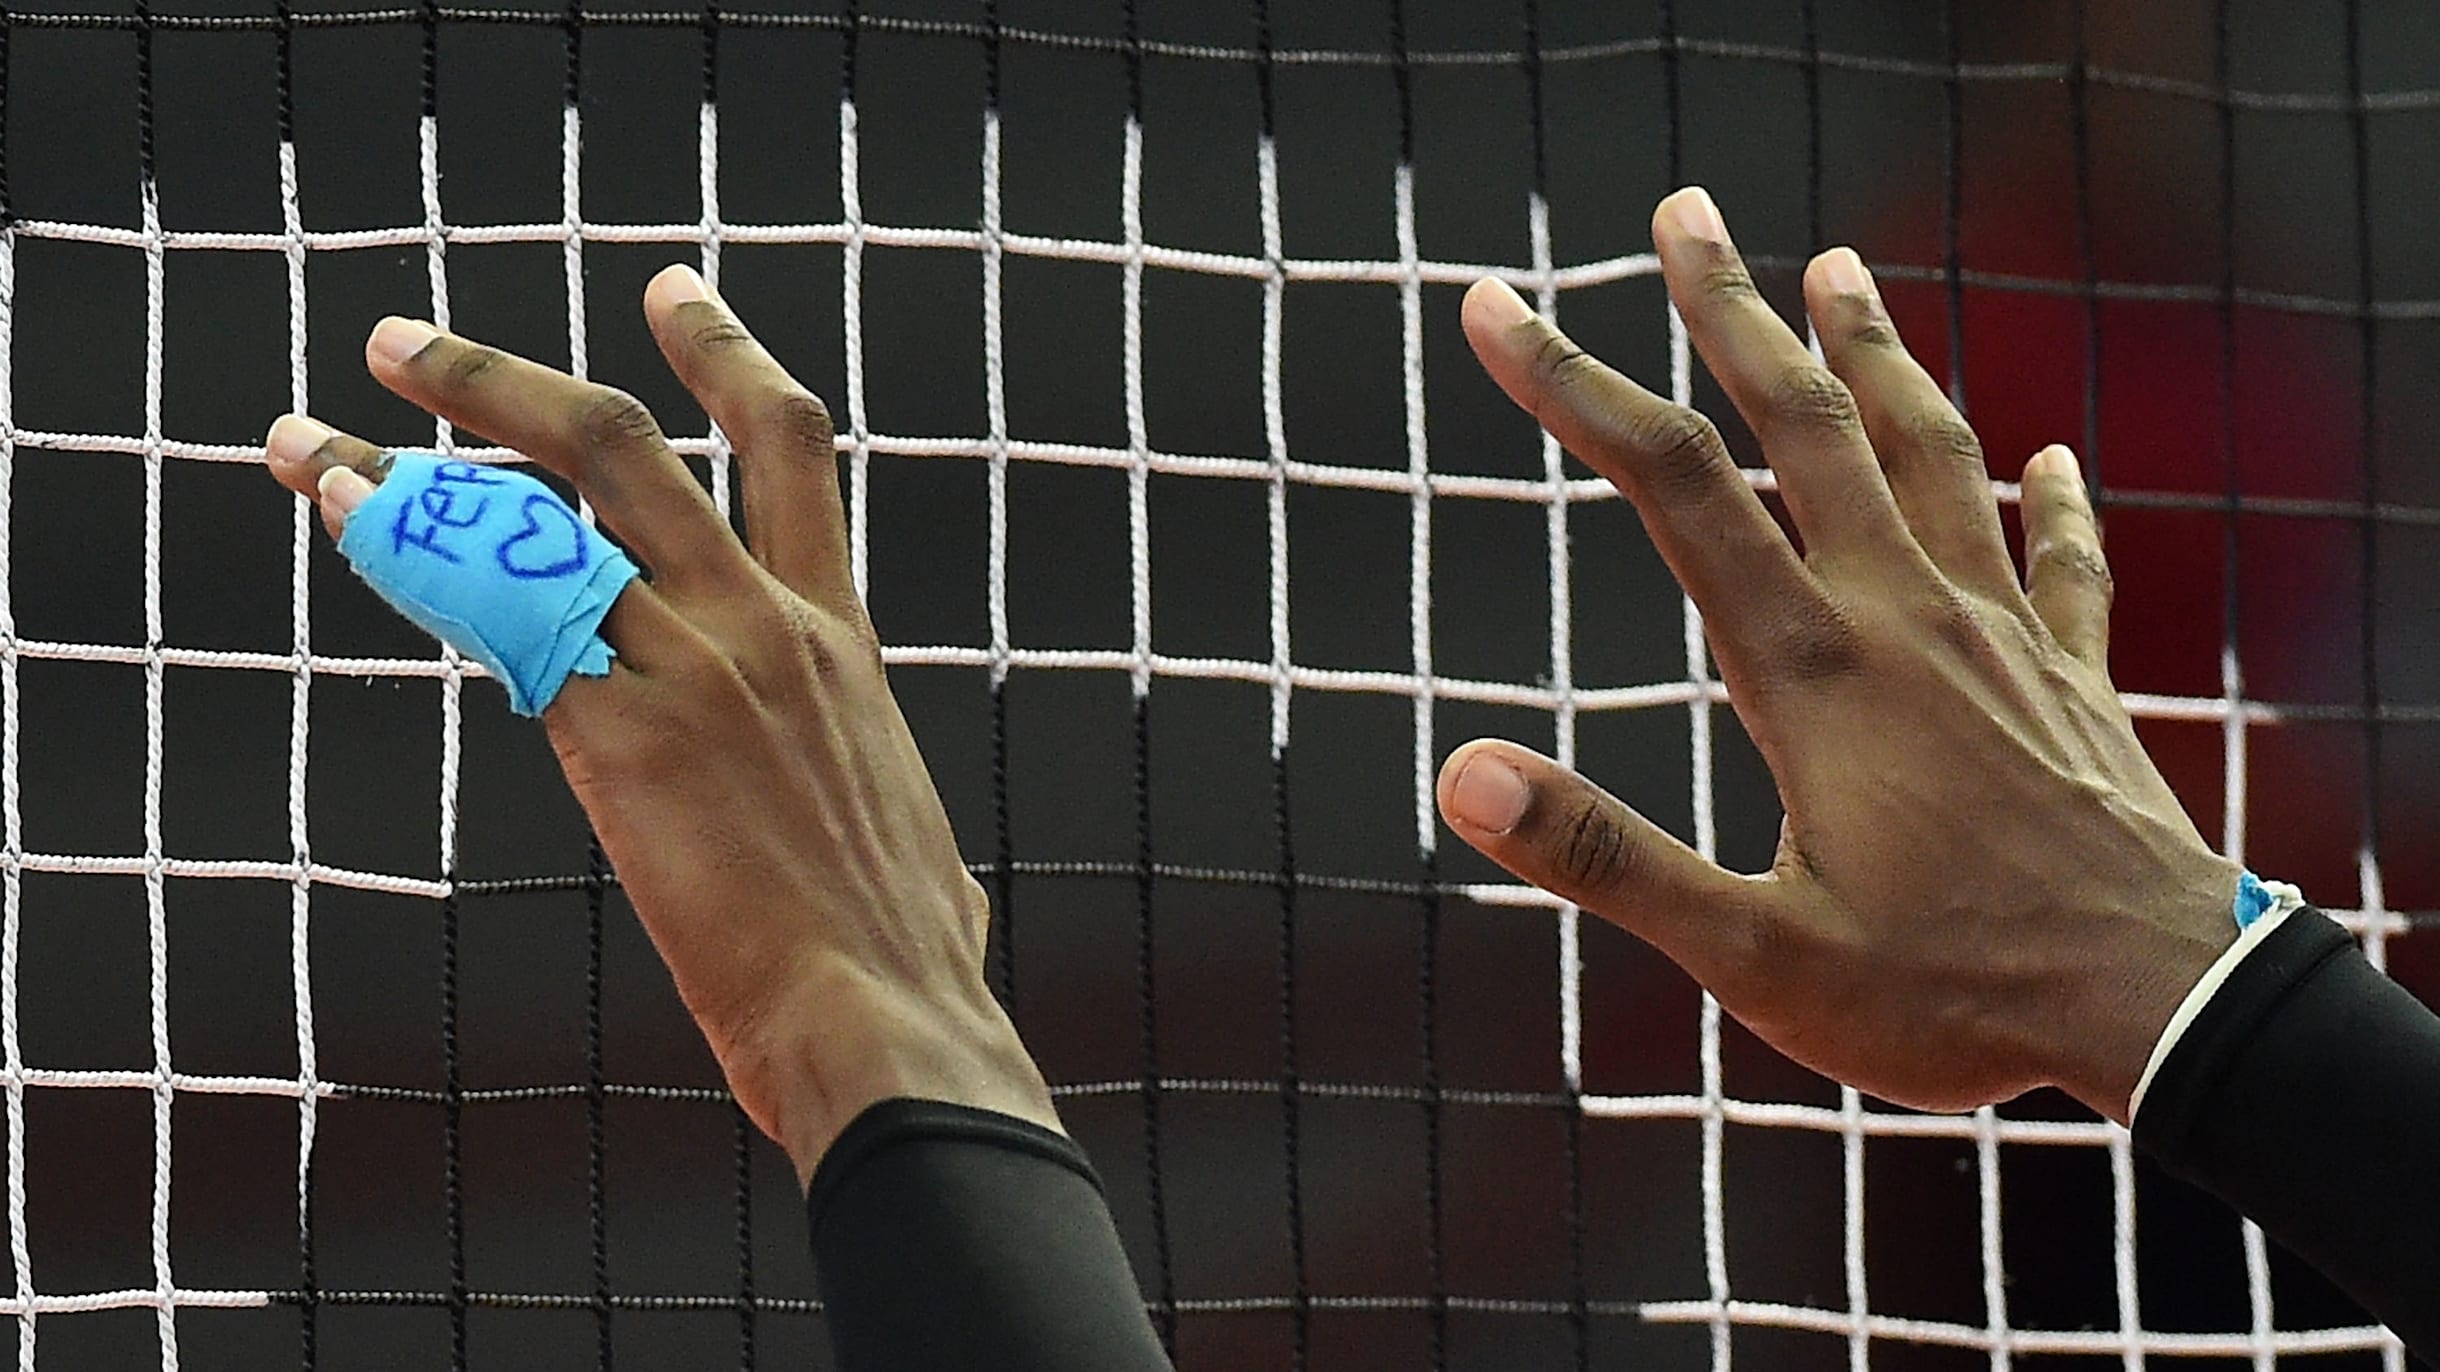 Voleibol: Altura de la red, tamaño de la cancha y otros números del deporte